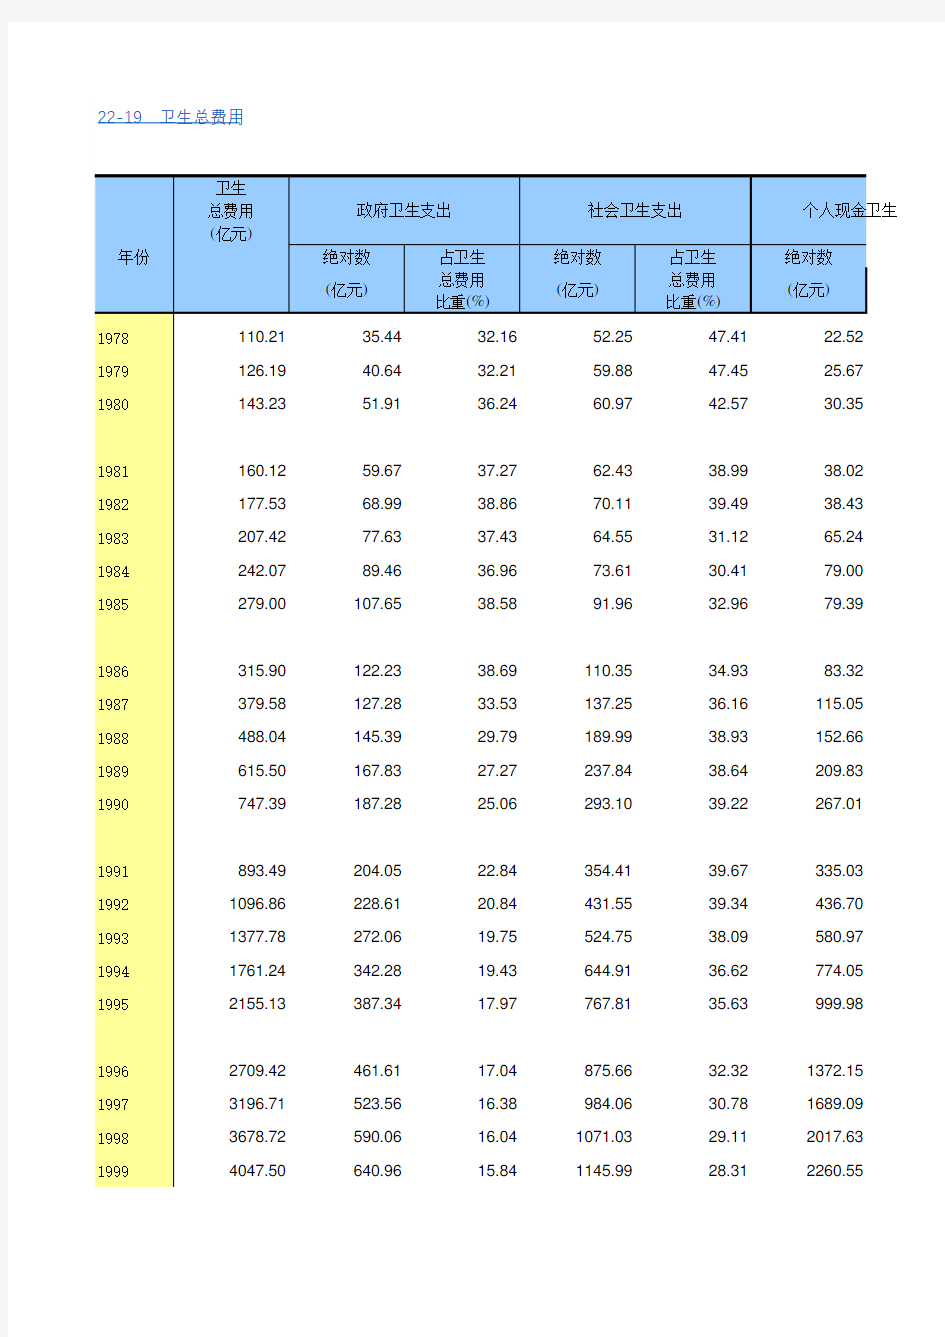 中国统计年鉴2018全国各省市区社会经济发展指标：卫生总费用